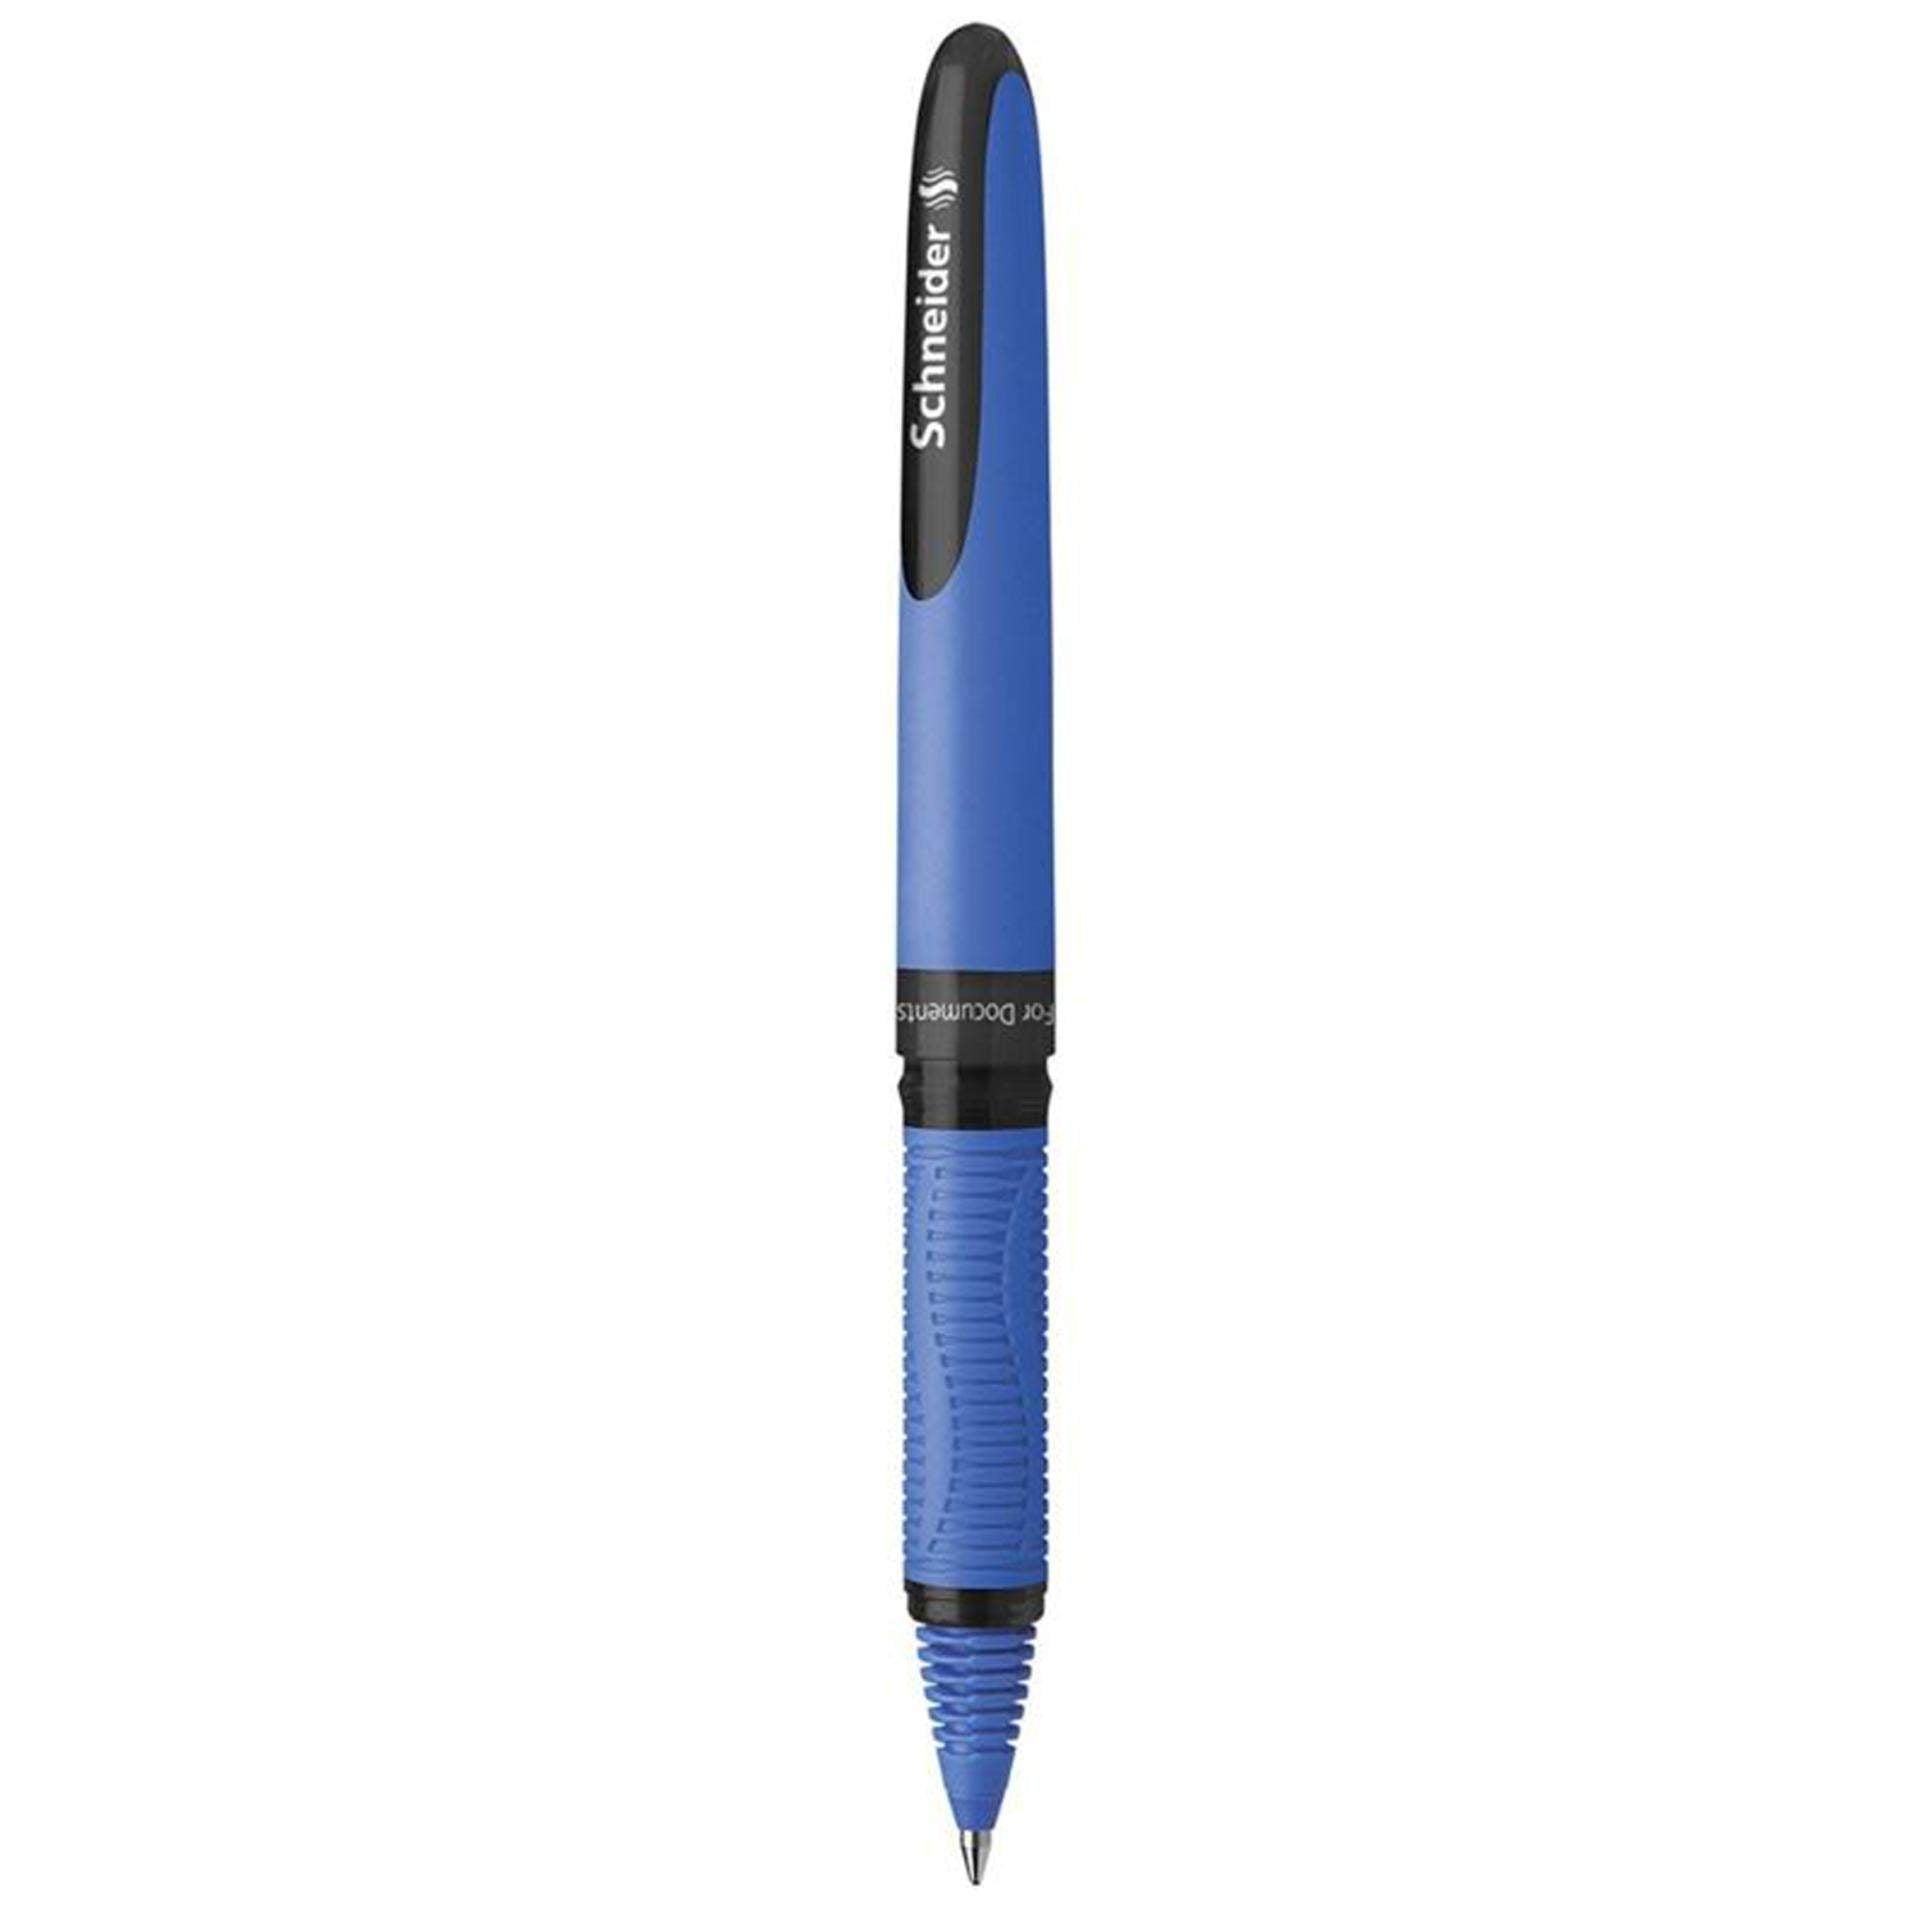 Schneider One Hybrid C Ballpoint Pen-School2Office-ballpoint pen,office supplies,Schneider